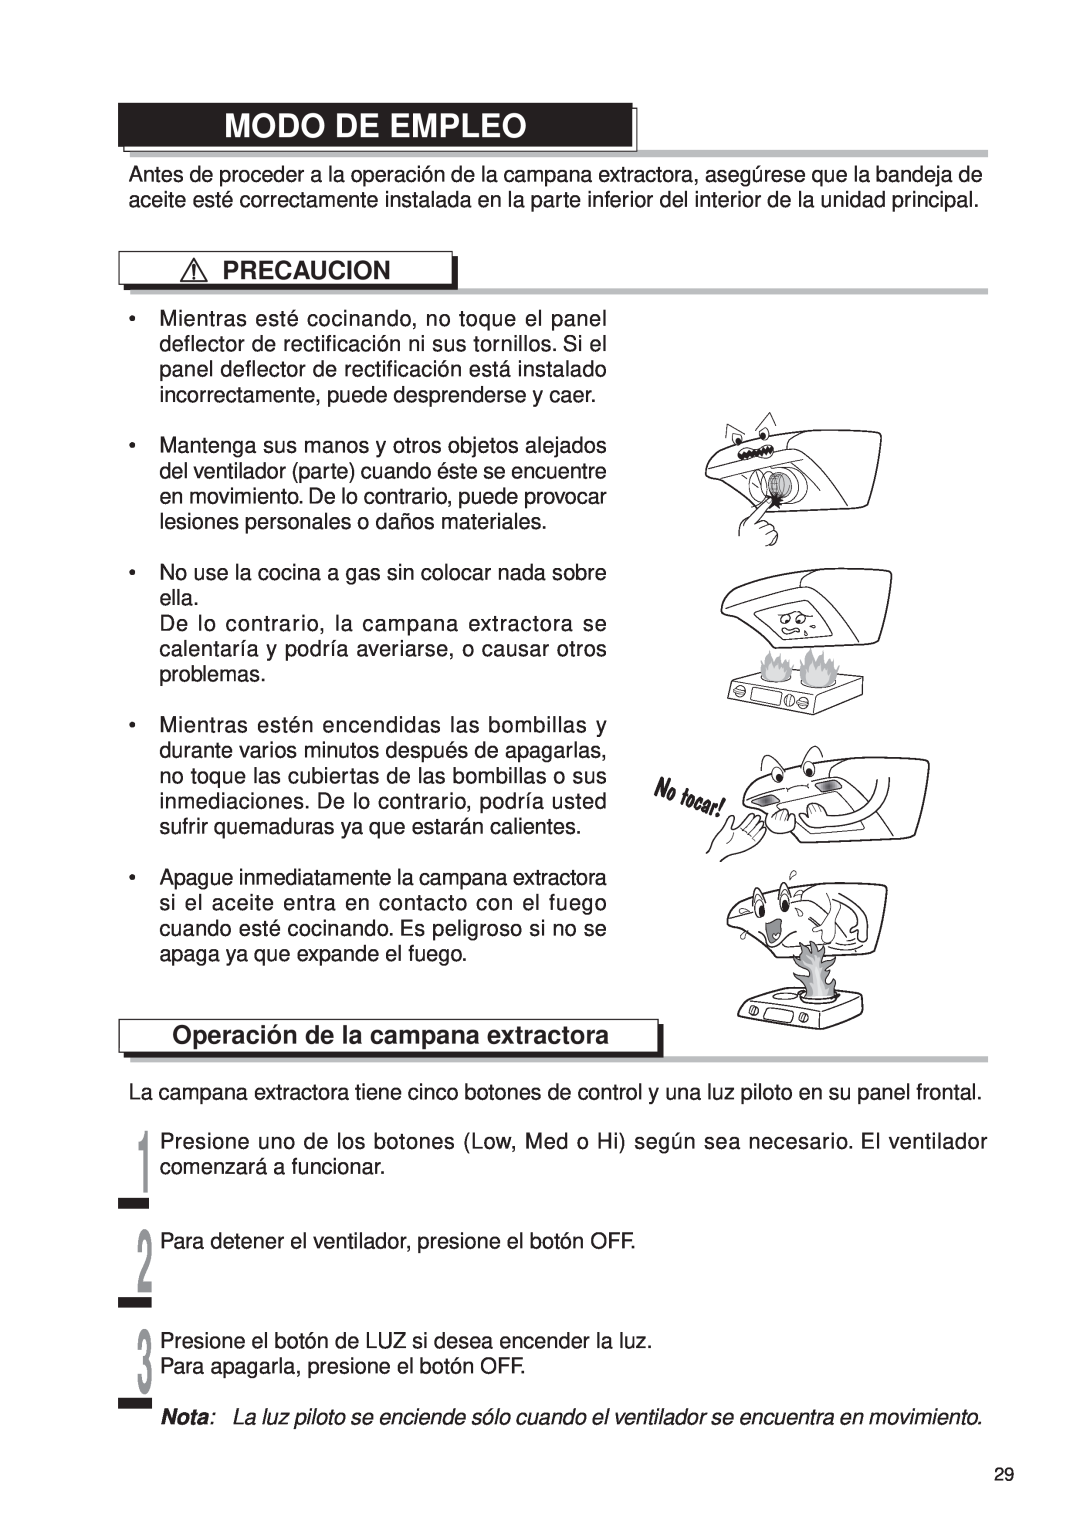 Fujioh FDR-4200D operation manual Modo De Empleo, Operación de la campana extractora, Precaucion 